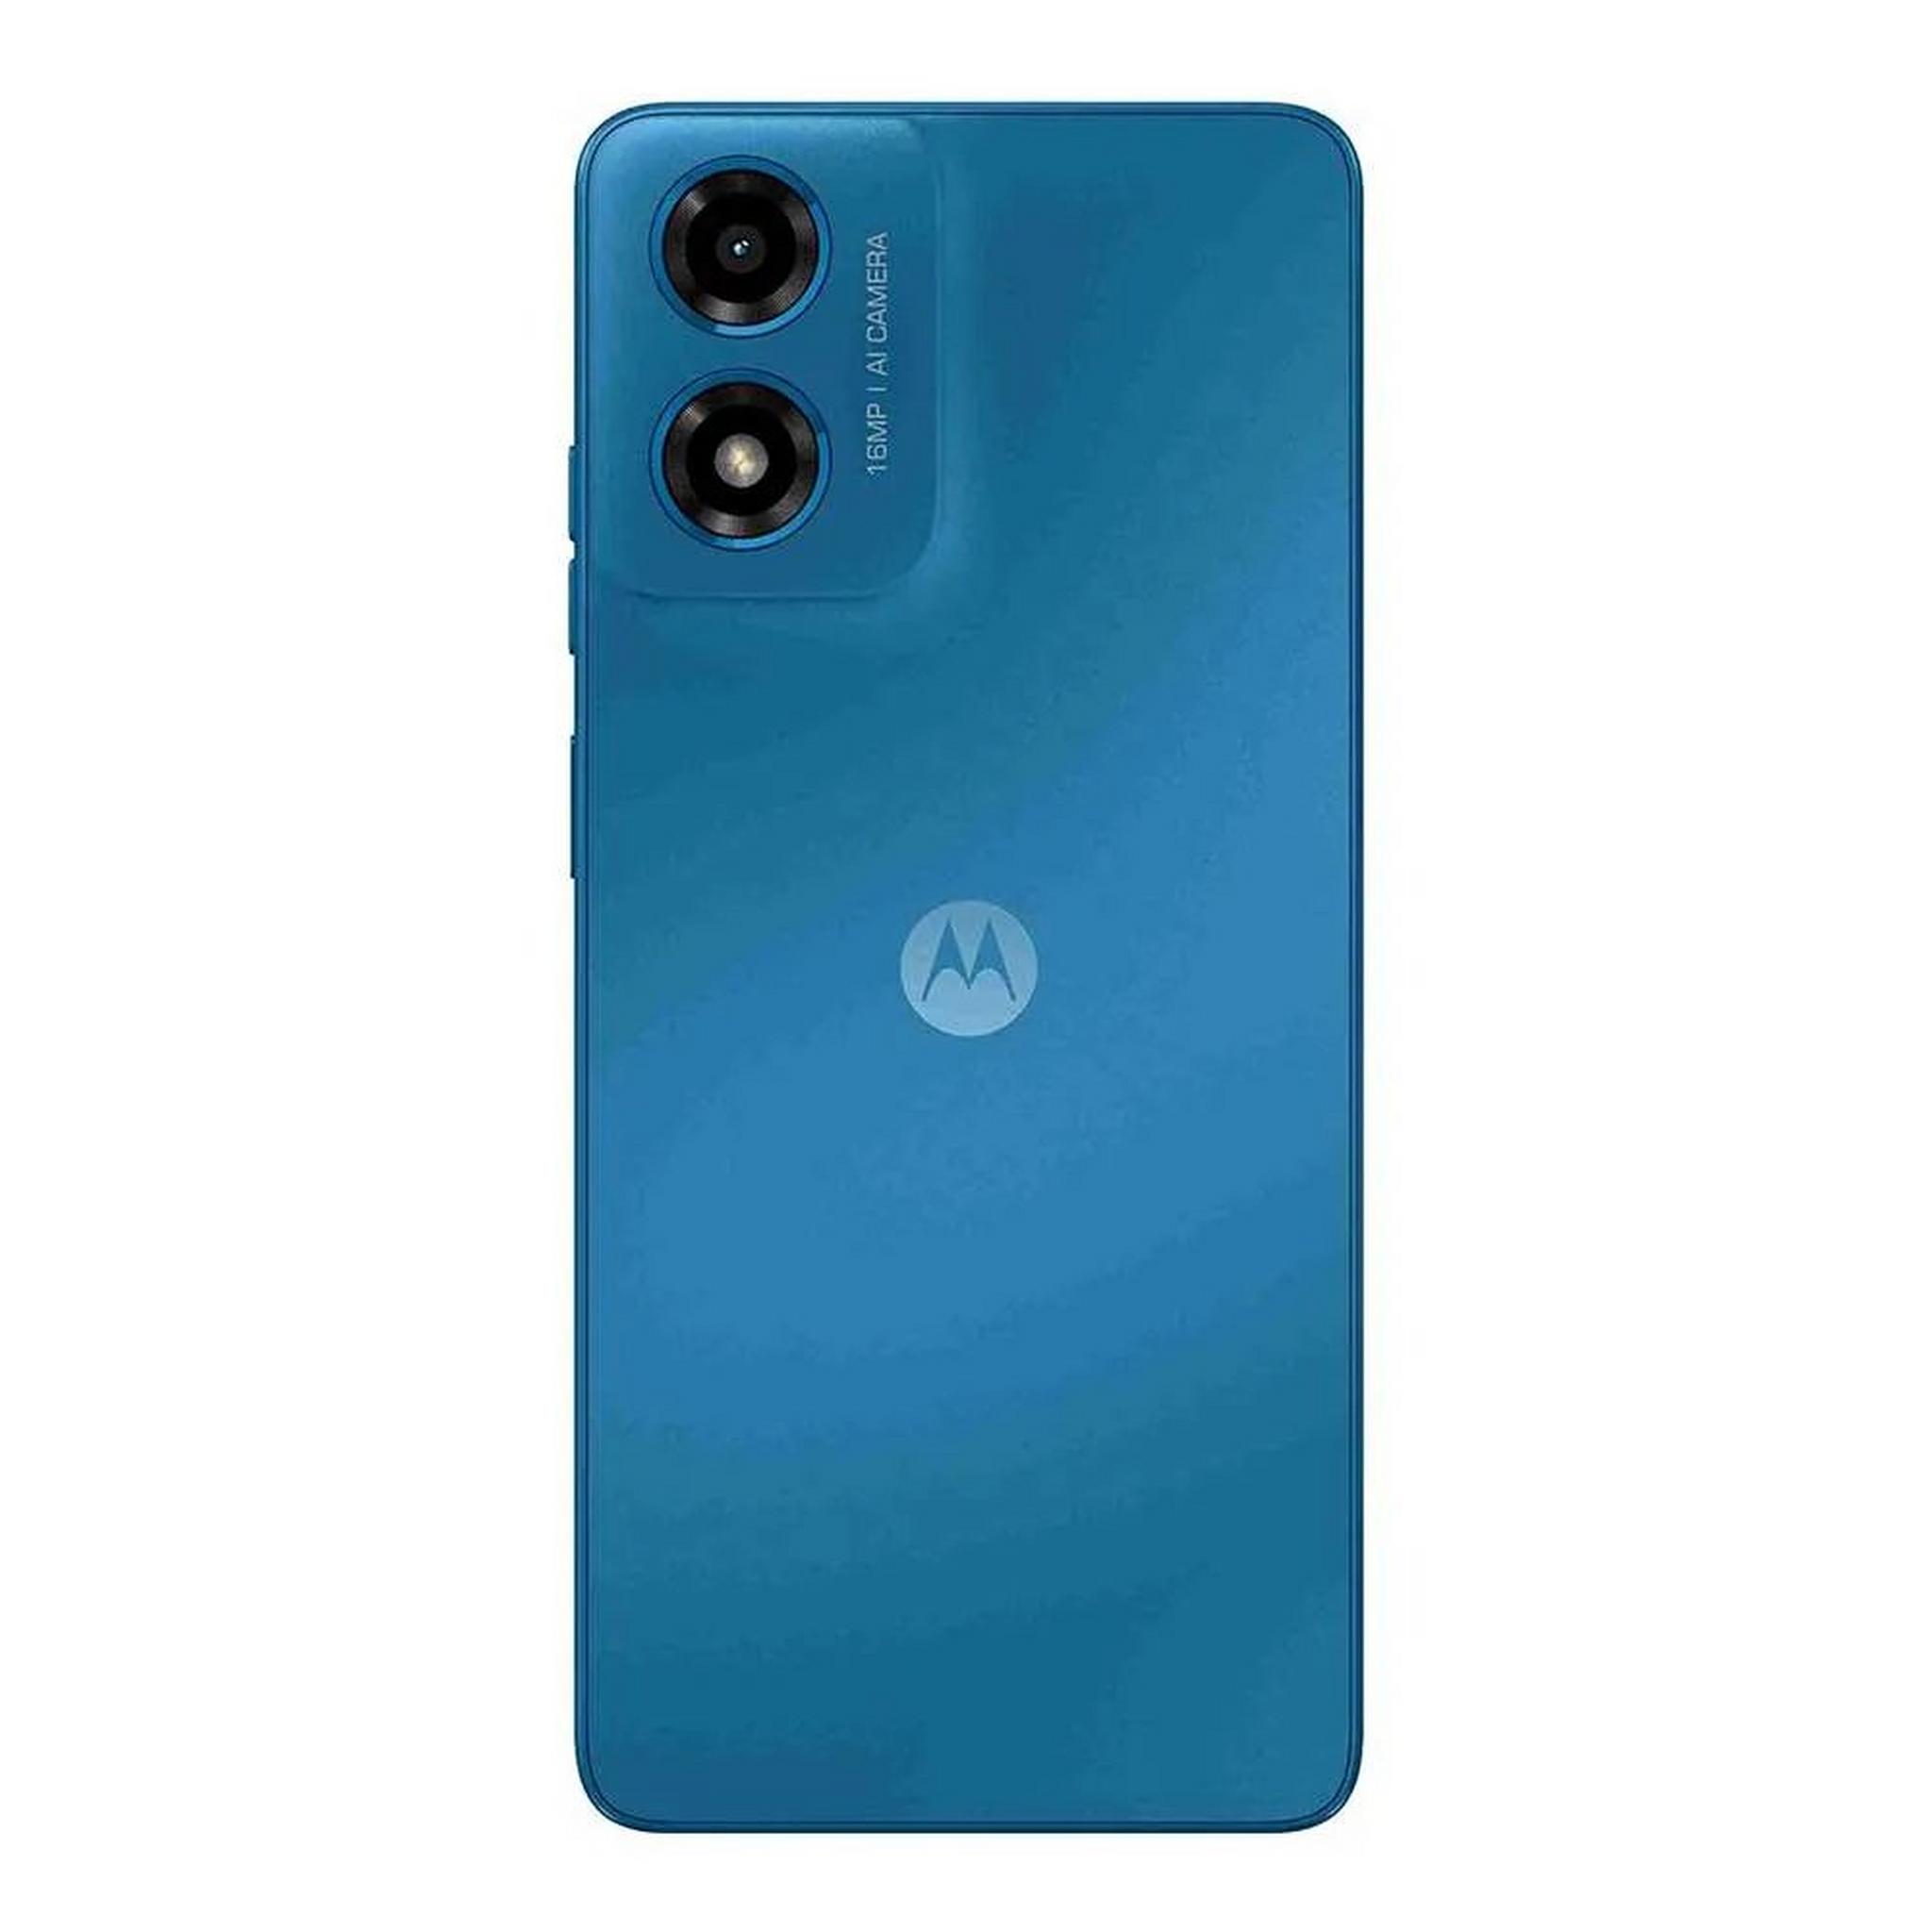 هاتف موتو جي04 من موتورولا، شاشة 6.56 بوصة، رام 4 جيجابايت، 64 جيجابايت - أزرق